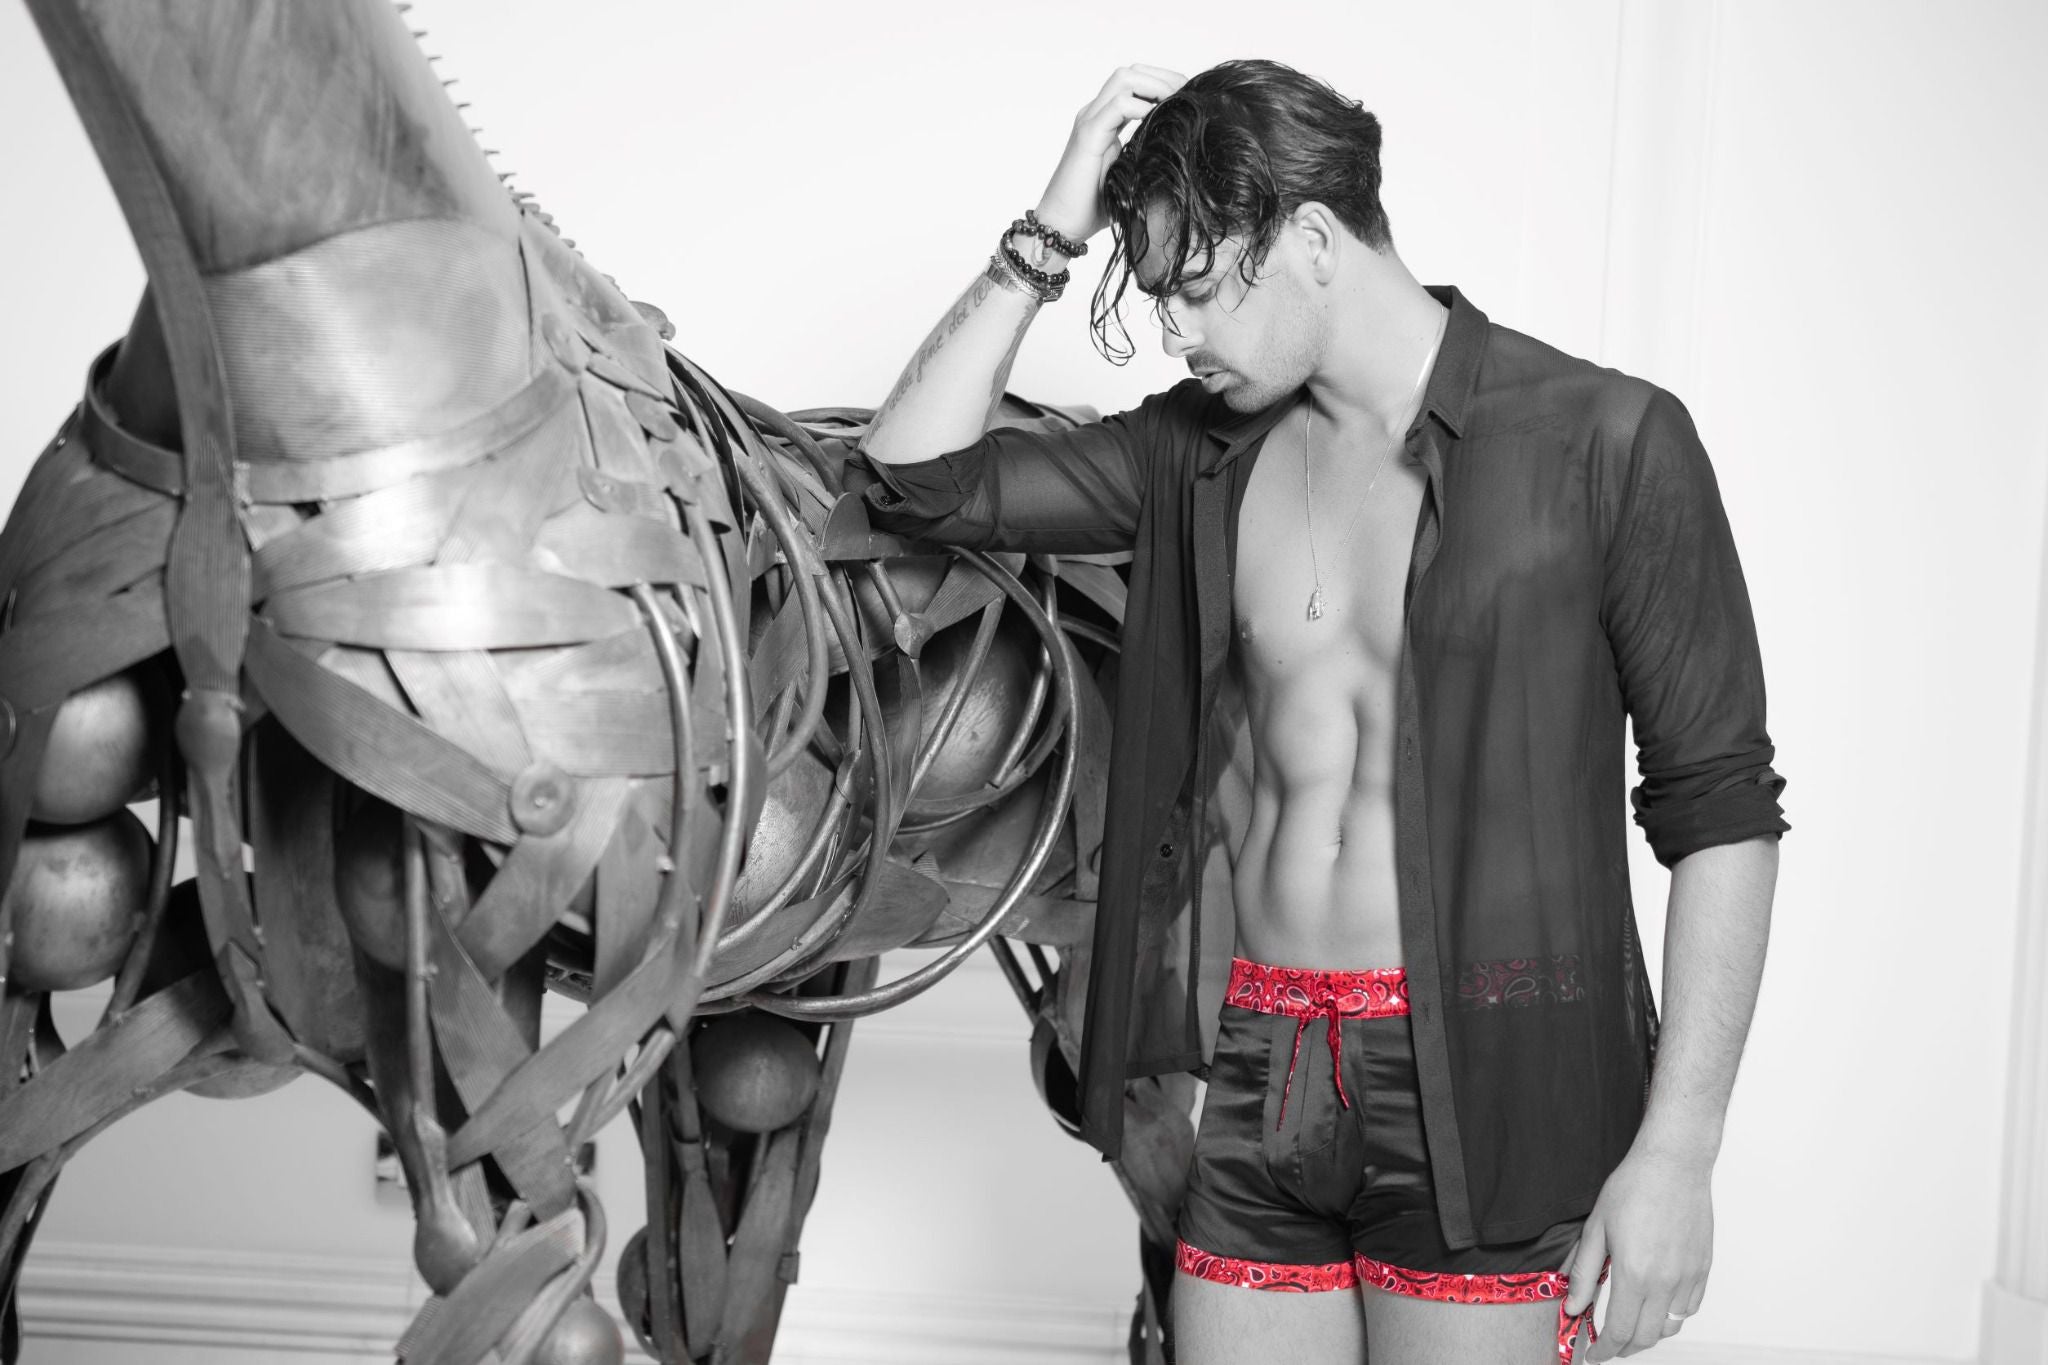 Photo noir et blanc d'un modèle à côté d'une sculpture de cheval, portant un boxer "California Love" By Radouane, mettant en avant la soie noire de qualité et l'accent du bandana rouge iconique.